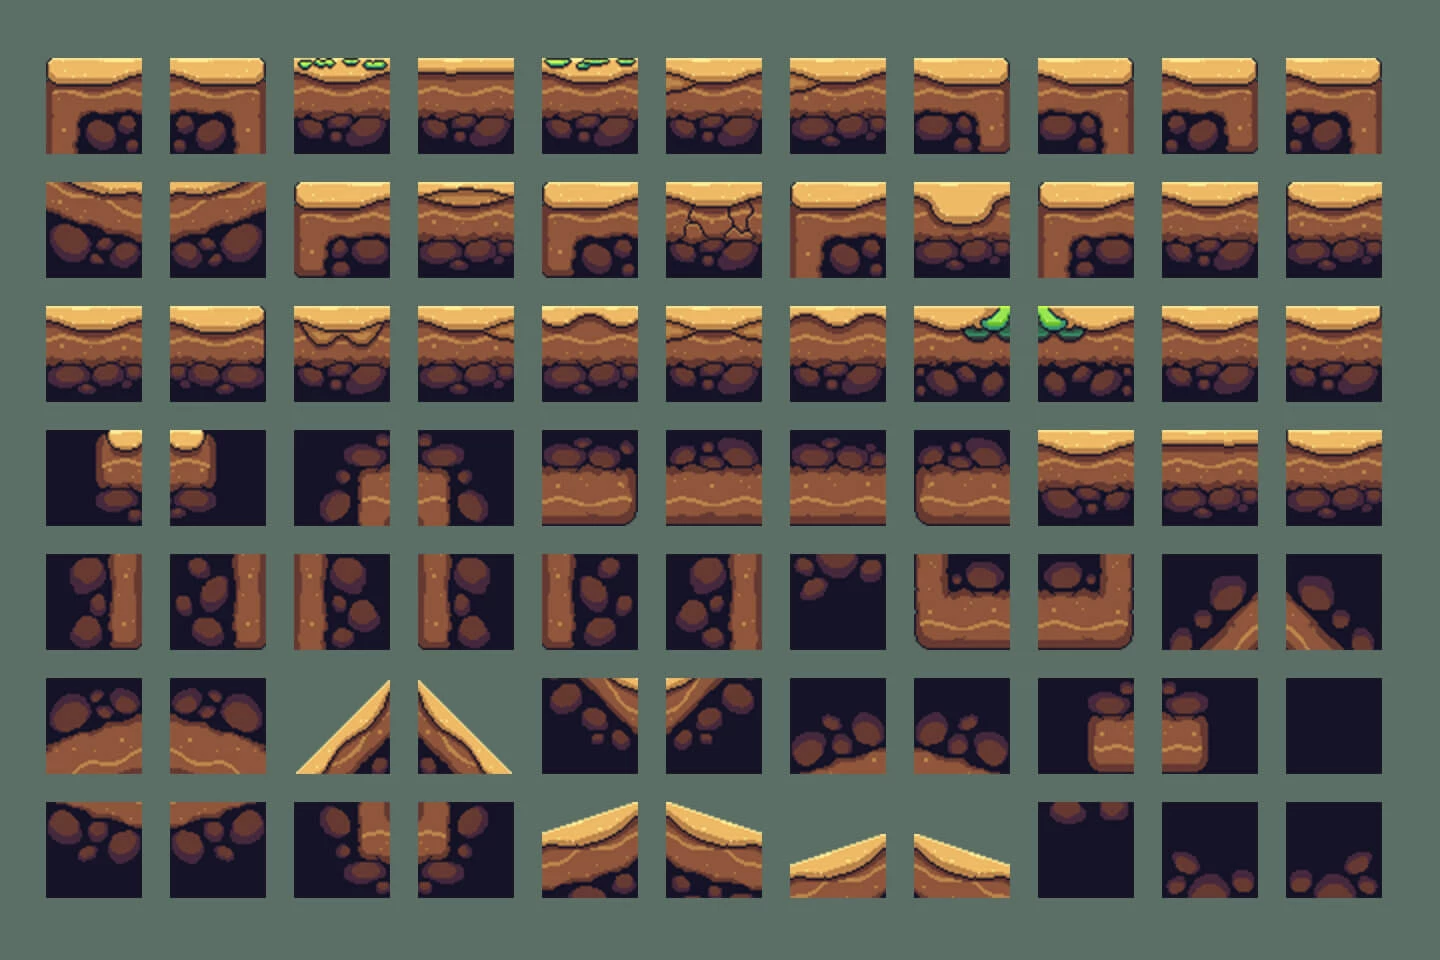 Desert Bosses Pixel Art Sprite Sheet Pack 